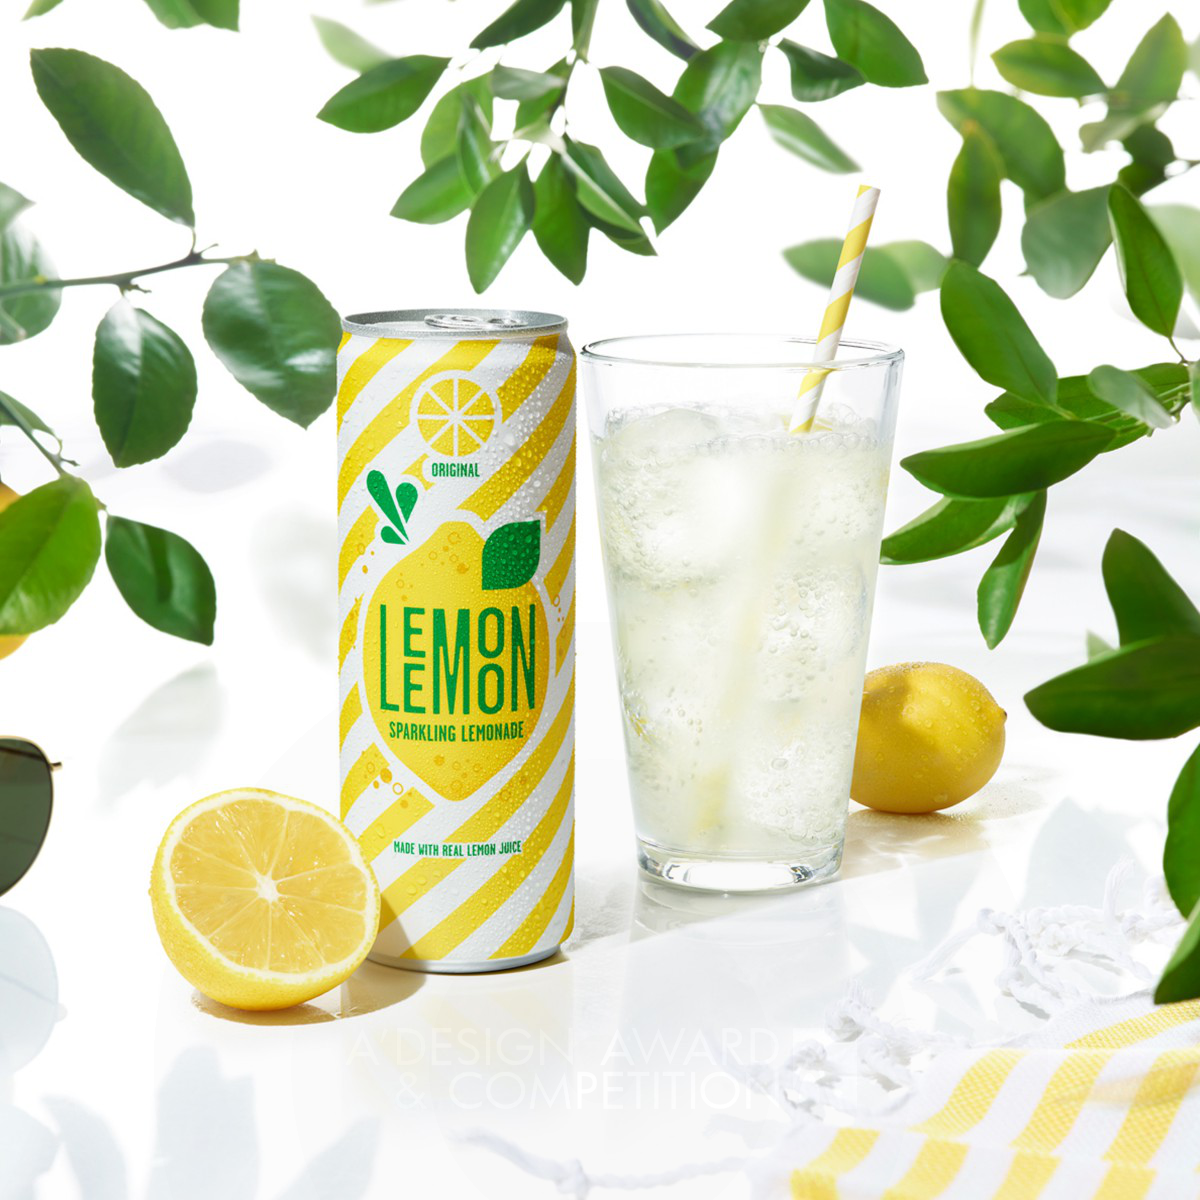 7Up Lemon Lemon <b>Brand Packaging